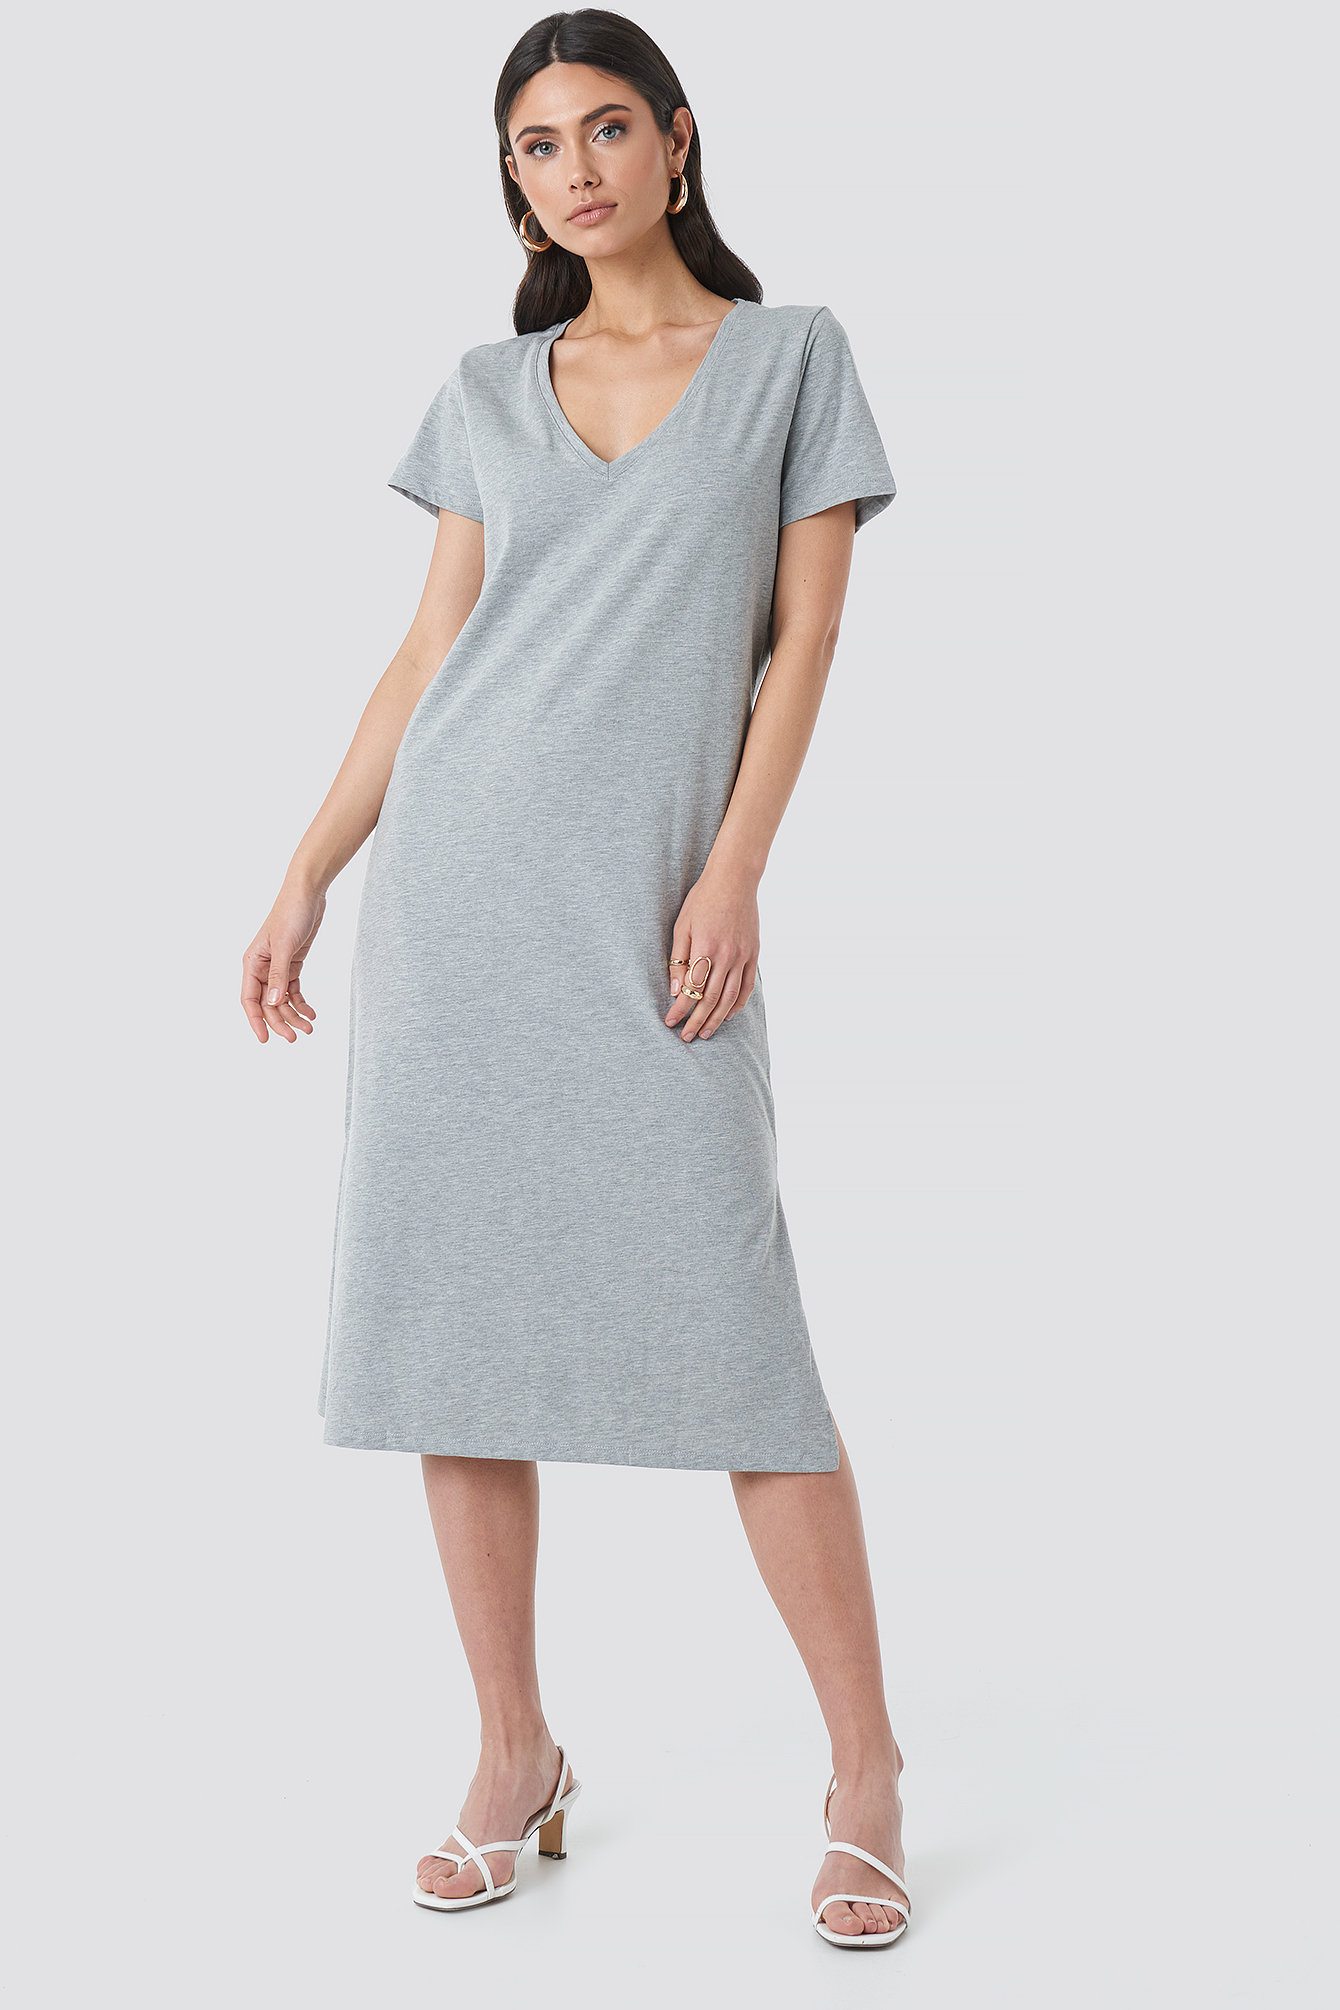 Grey Melange V-neck Jersey Dress